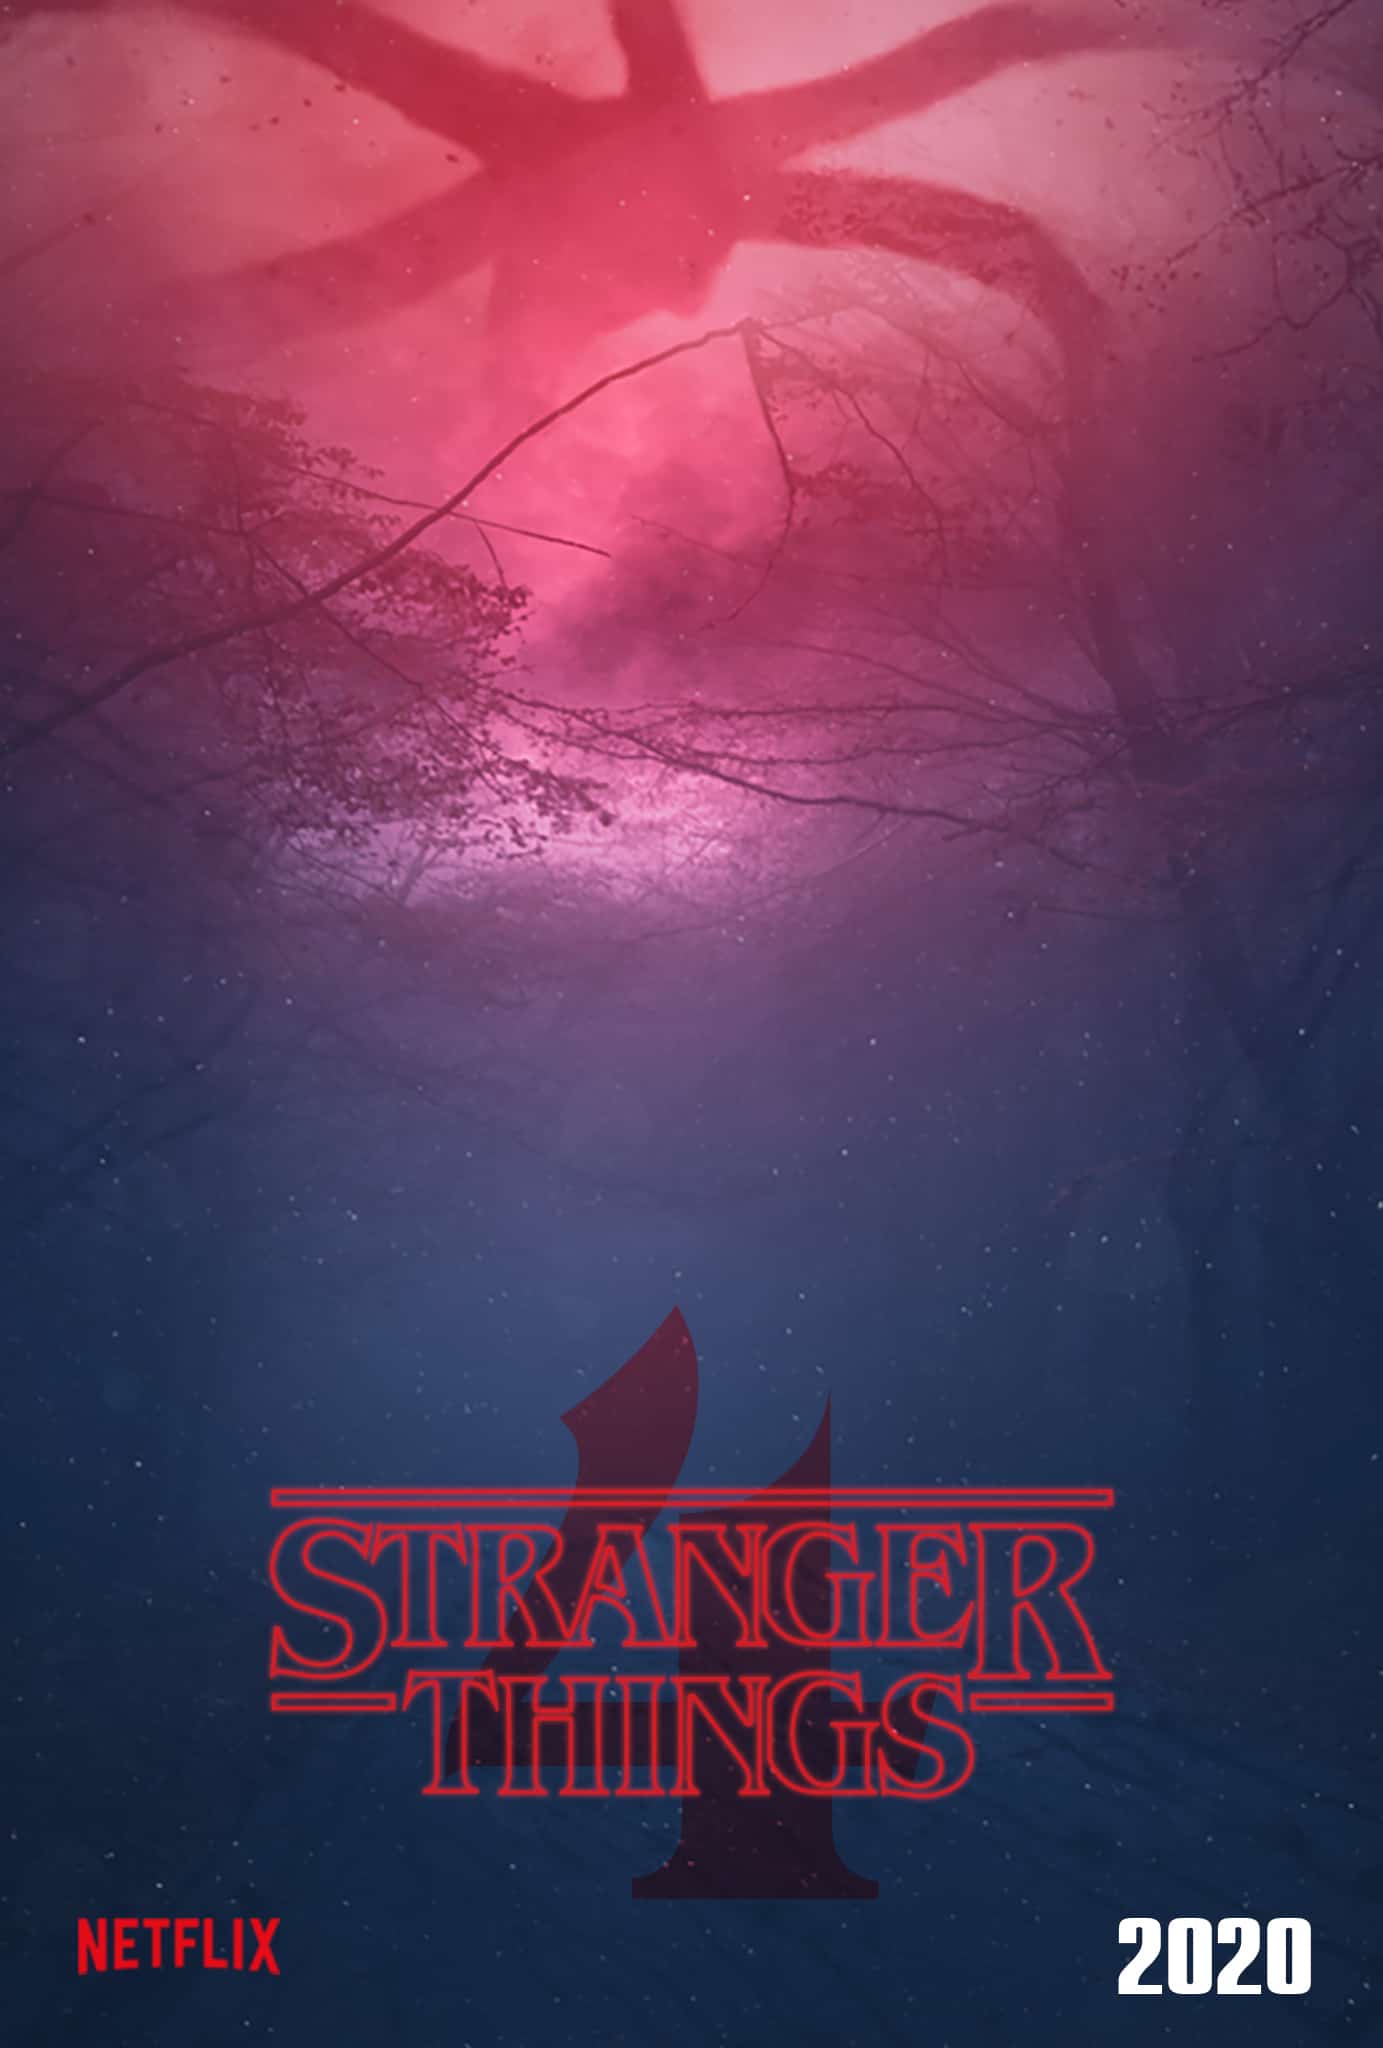 Stranger Things Season 4 's poster Design Ideas